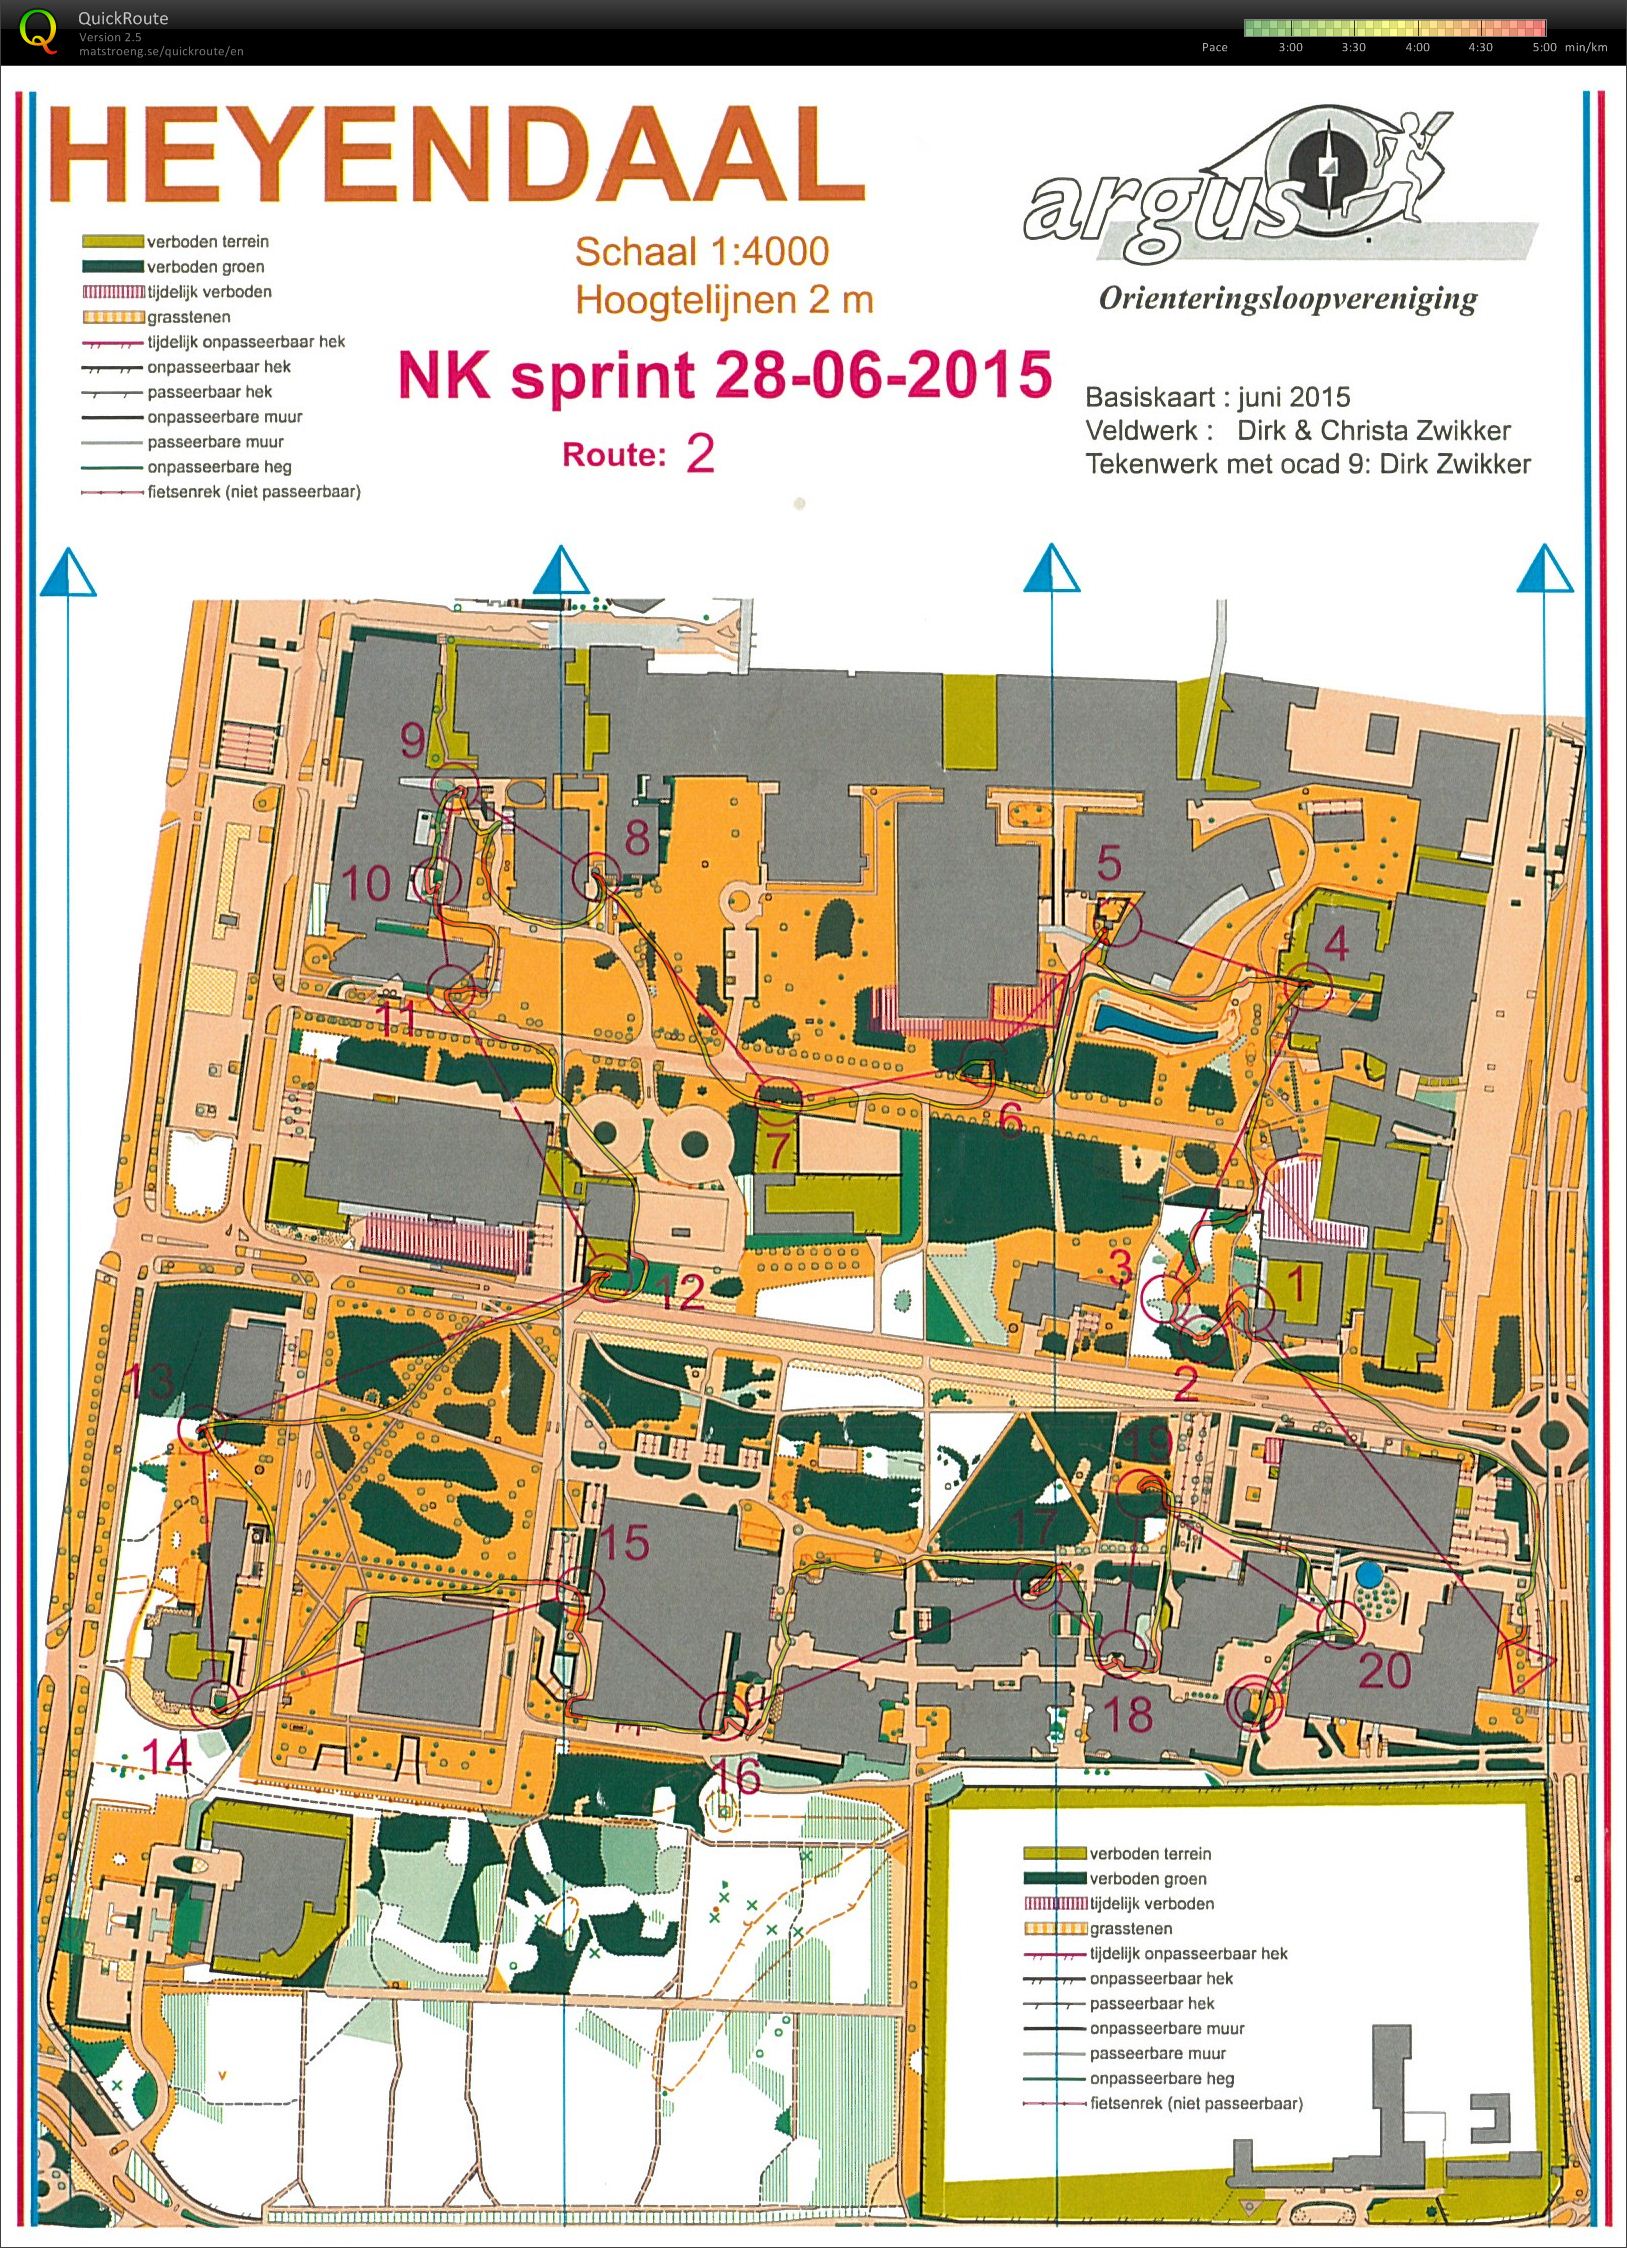 NK Sprint Heyendaal (28/06/2015)